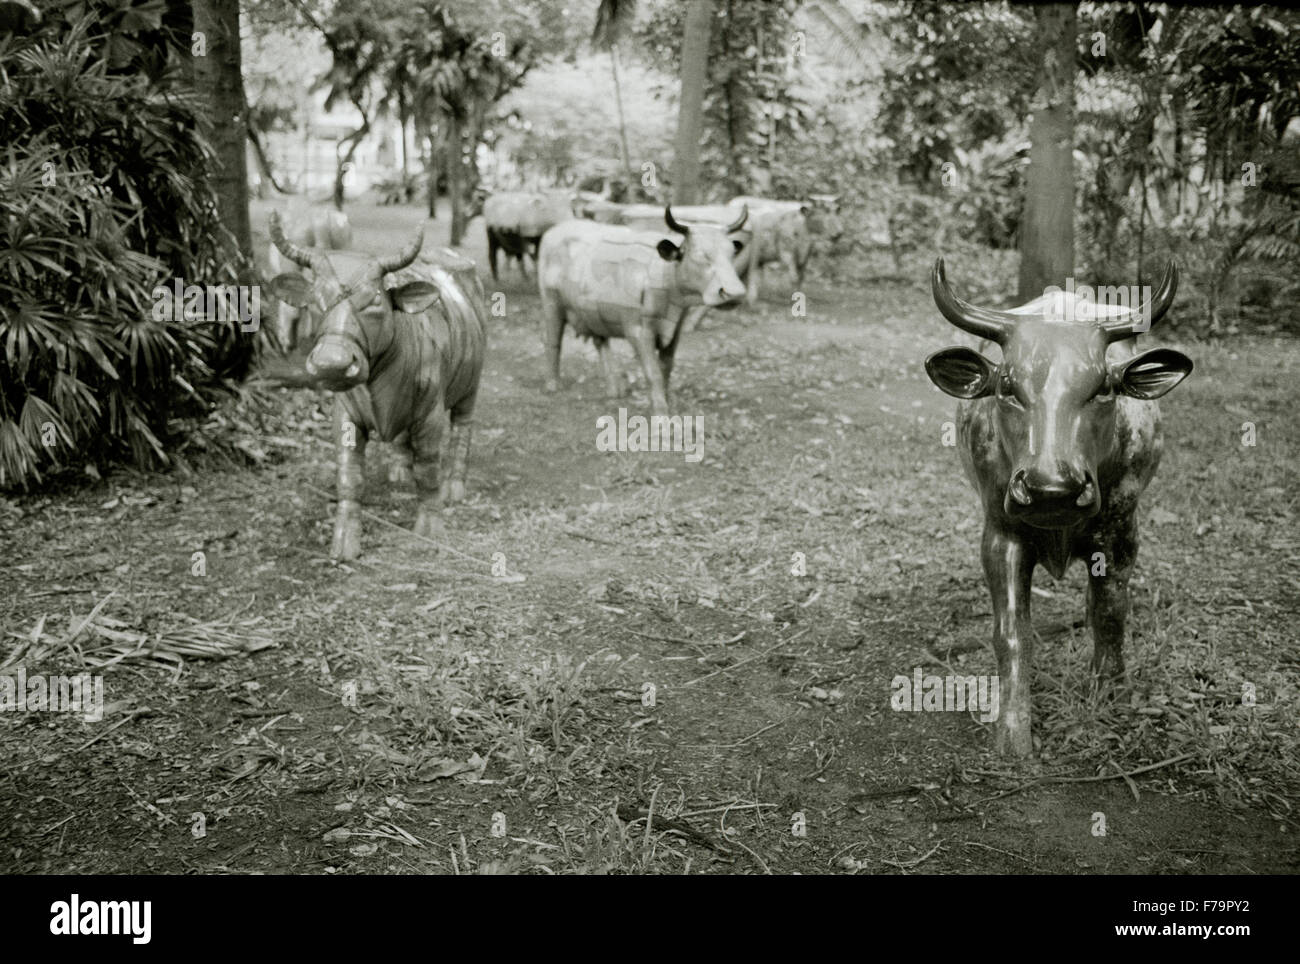 Reise Fotografie - moderne Kunst von Kühen in Bangkok, Thailand in Südostasien im Fernen Osten. Kuh Tier Tiere Bizarre Konzeptionelle Stockfoto